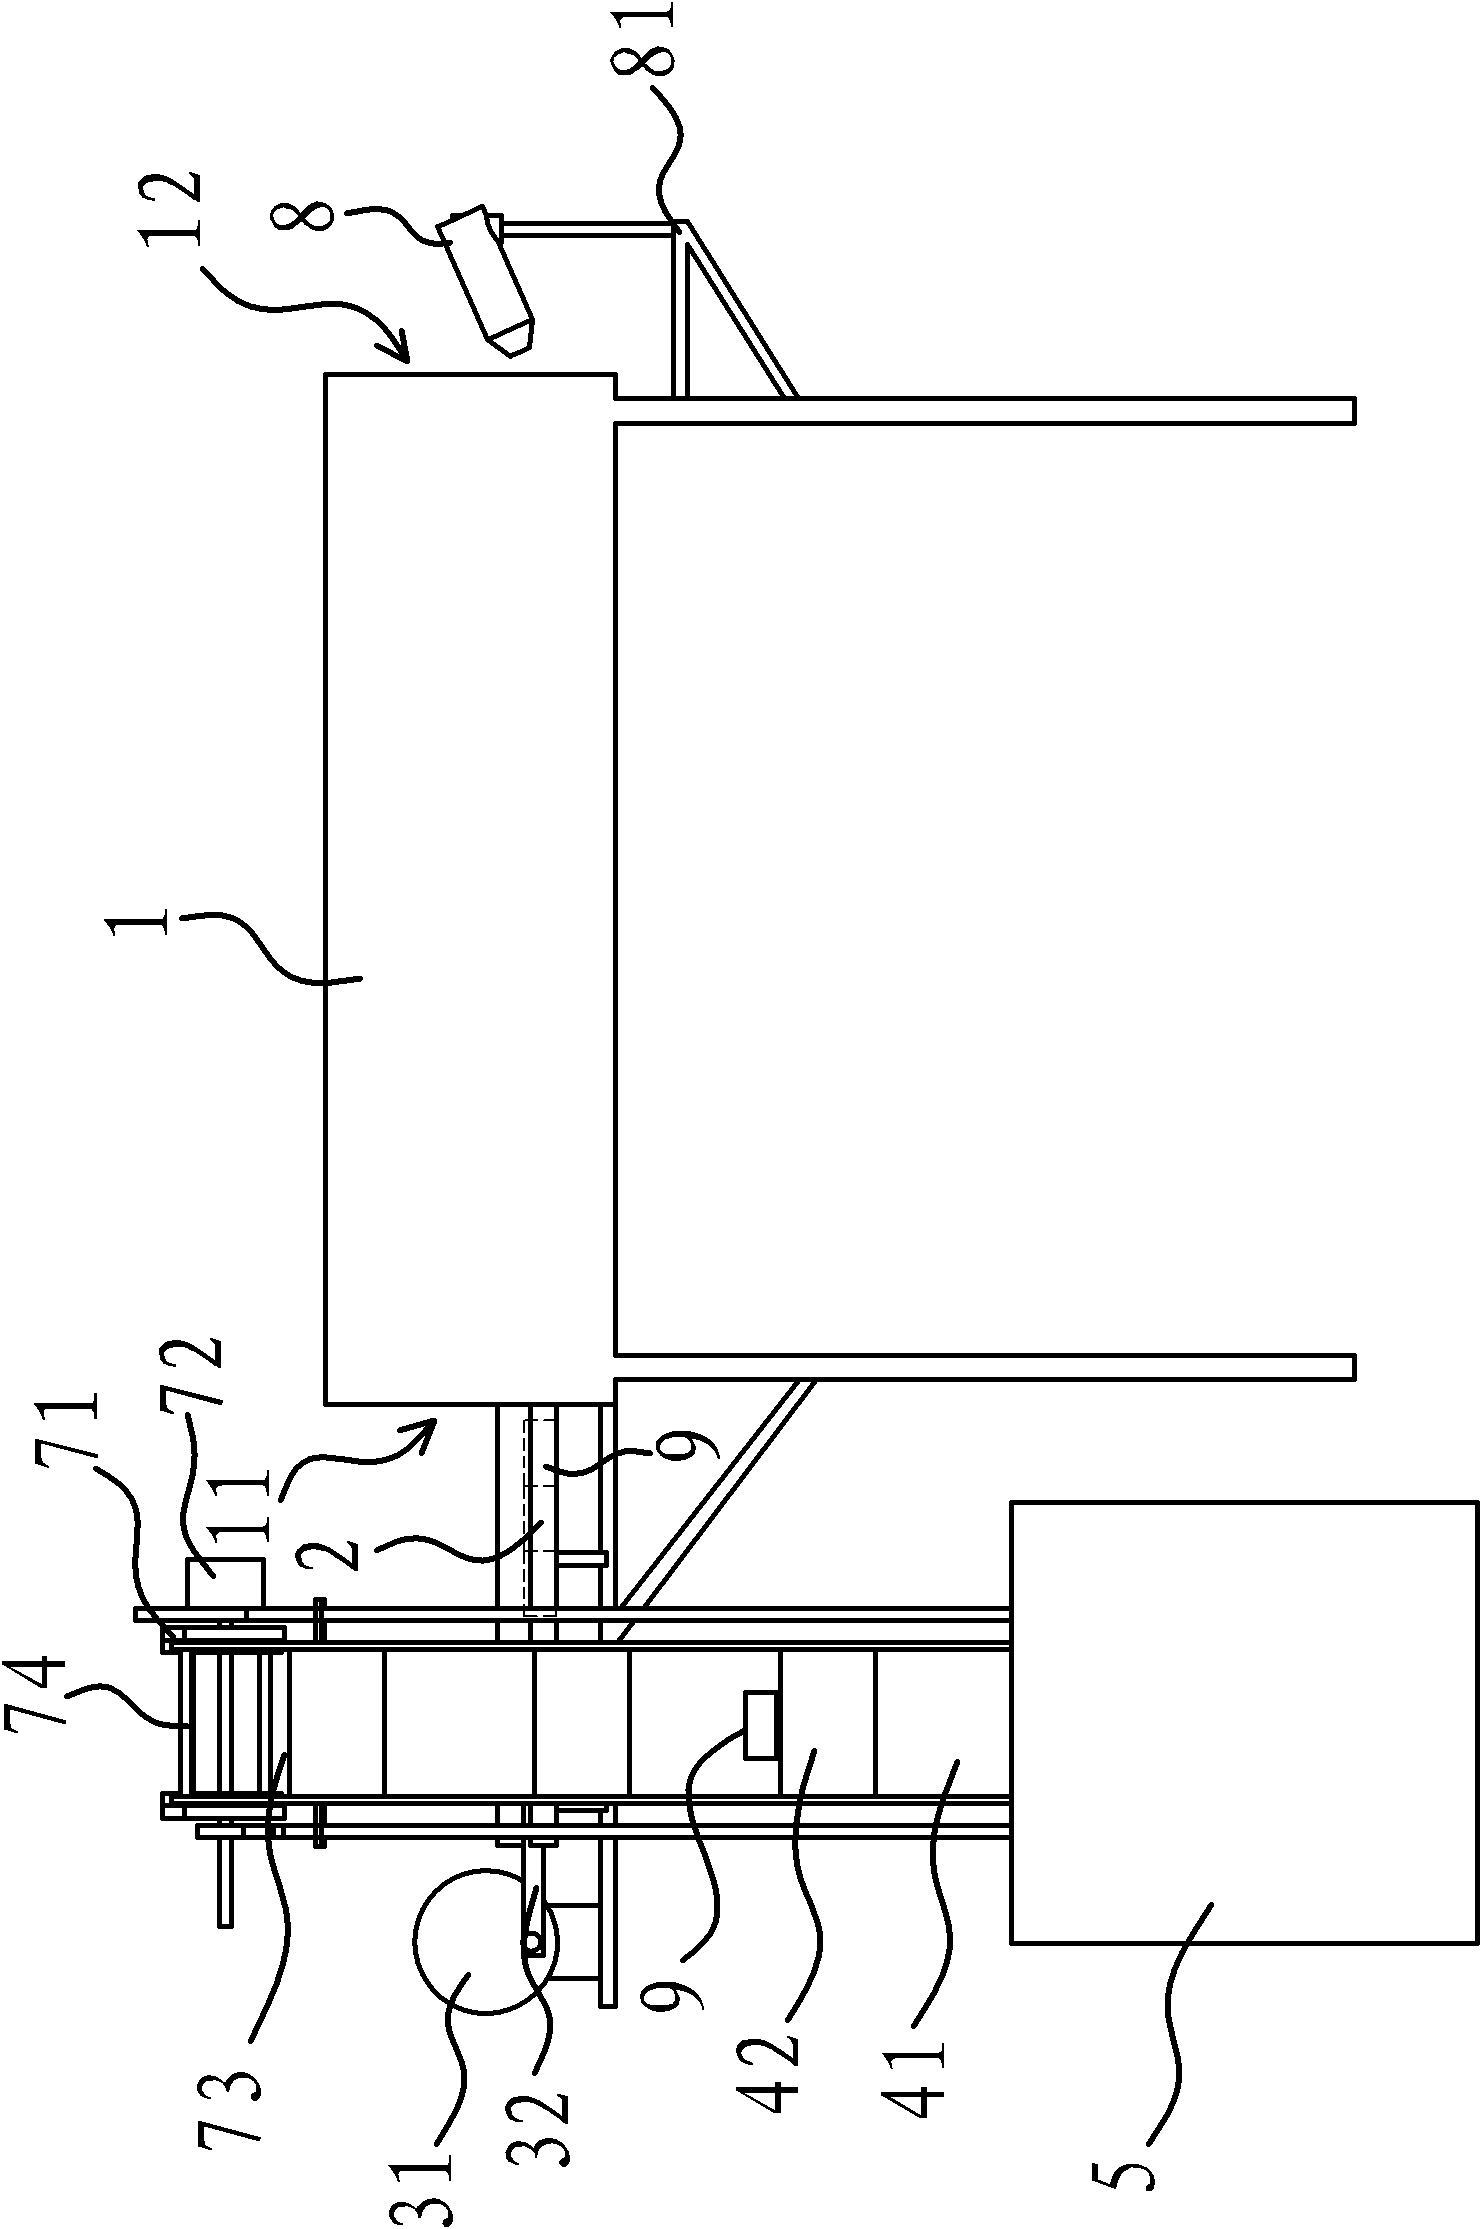 Inner heating furnace